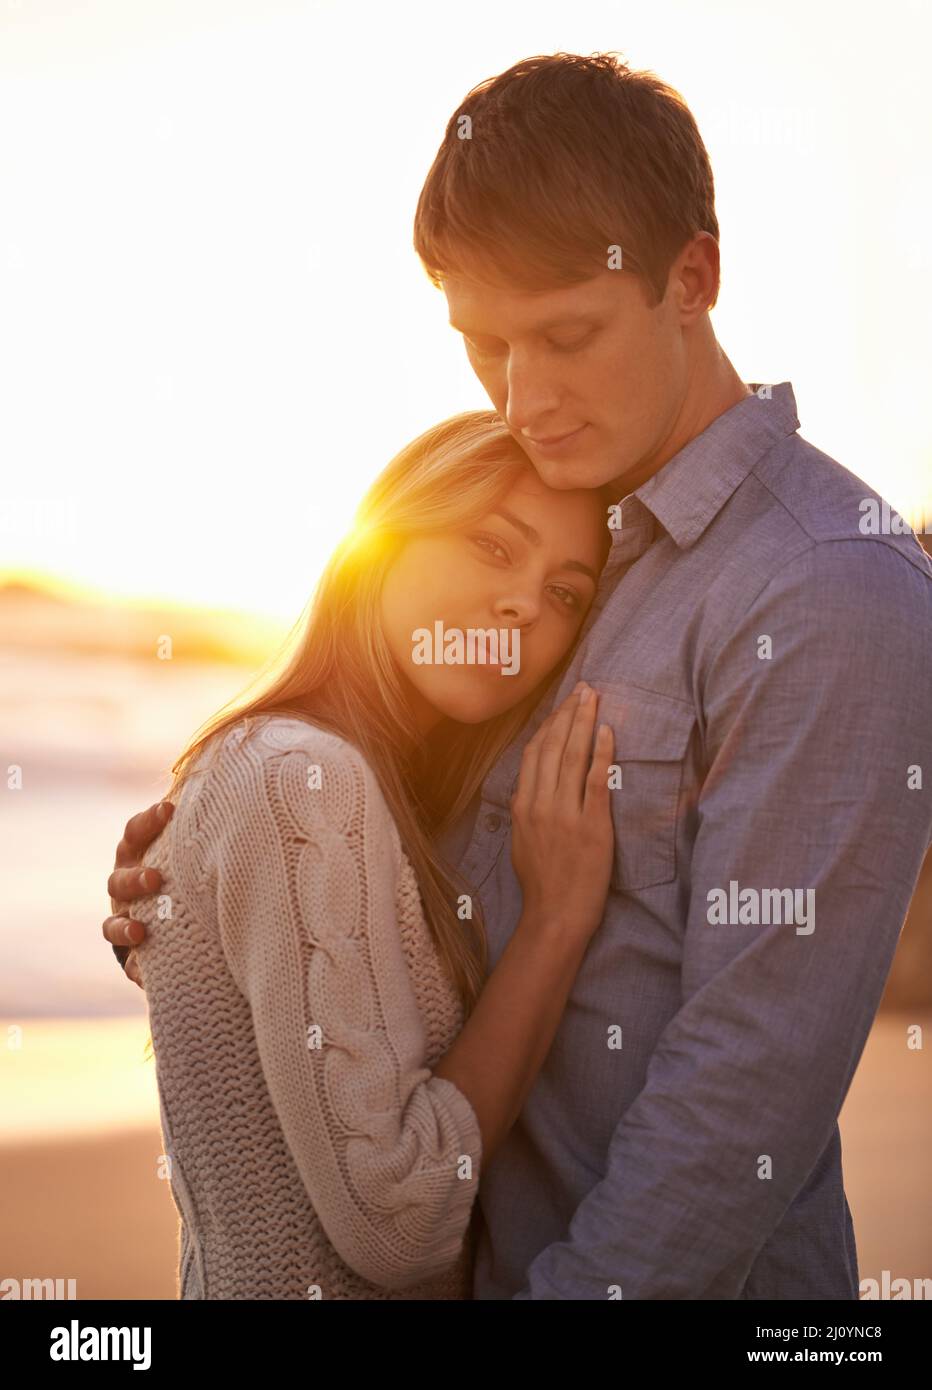 Un momento fra le mie braccia ma per sempre nel mio cuore. Ritratto di una giovane coppia felice godendo di un romantico abbraccio sulla spiaggia al tramonto. Foto Stock